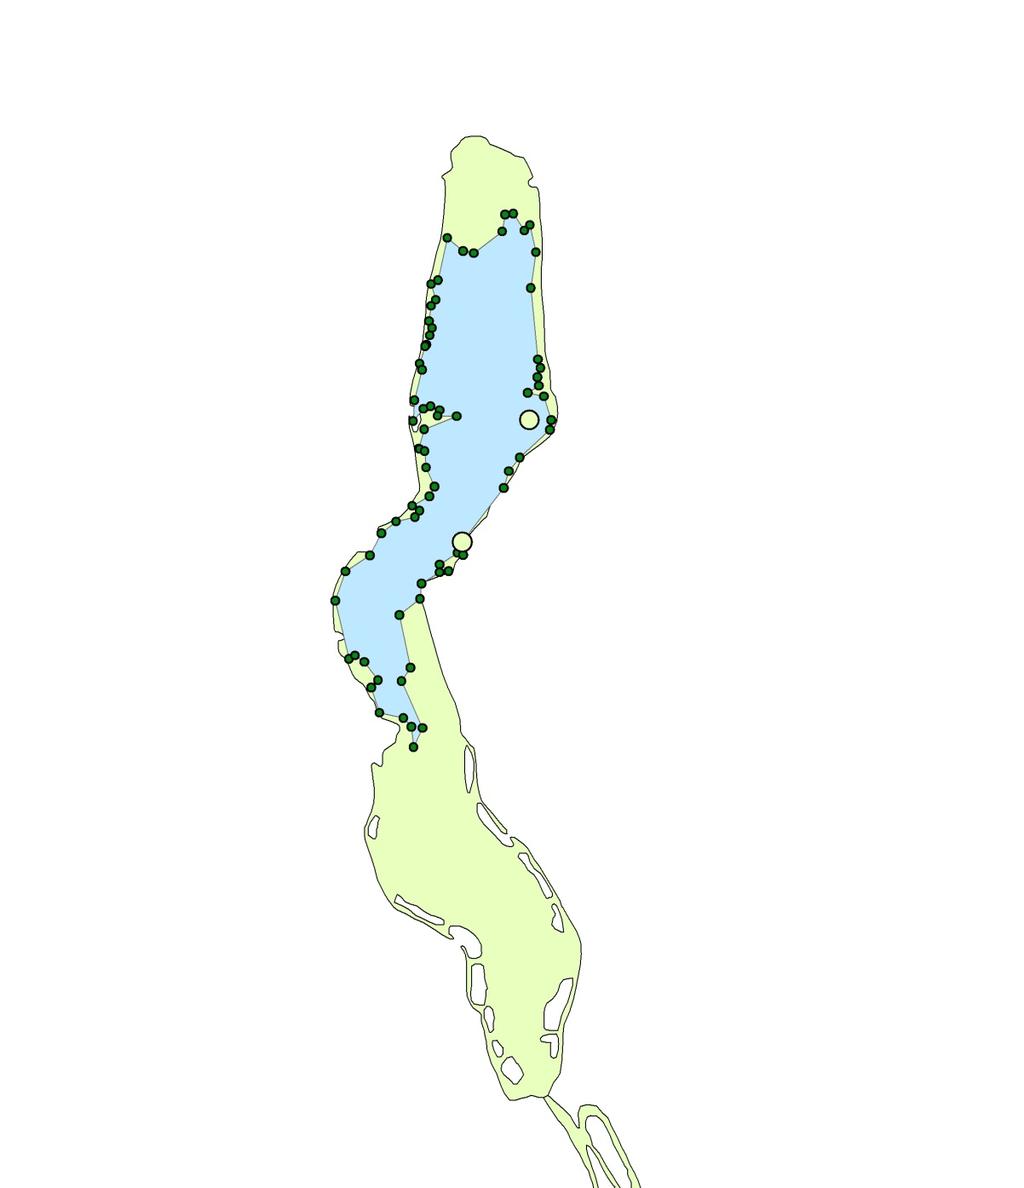 Figur 2. Anslått utbredelse av vasspest (overflatematter og undervannsbestander) i Østensjøvatn i september 2011. Basert på GPS-punkter (grønne punkter). Lys grønn farge angir vasspestens utbredelse.